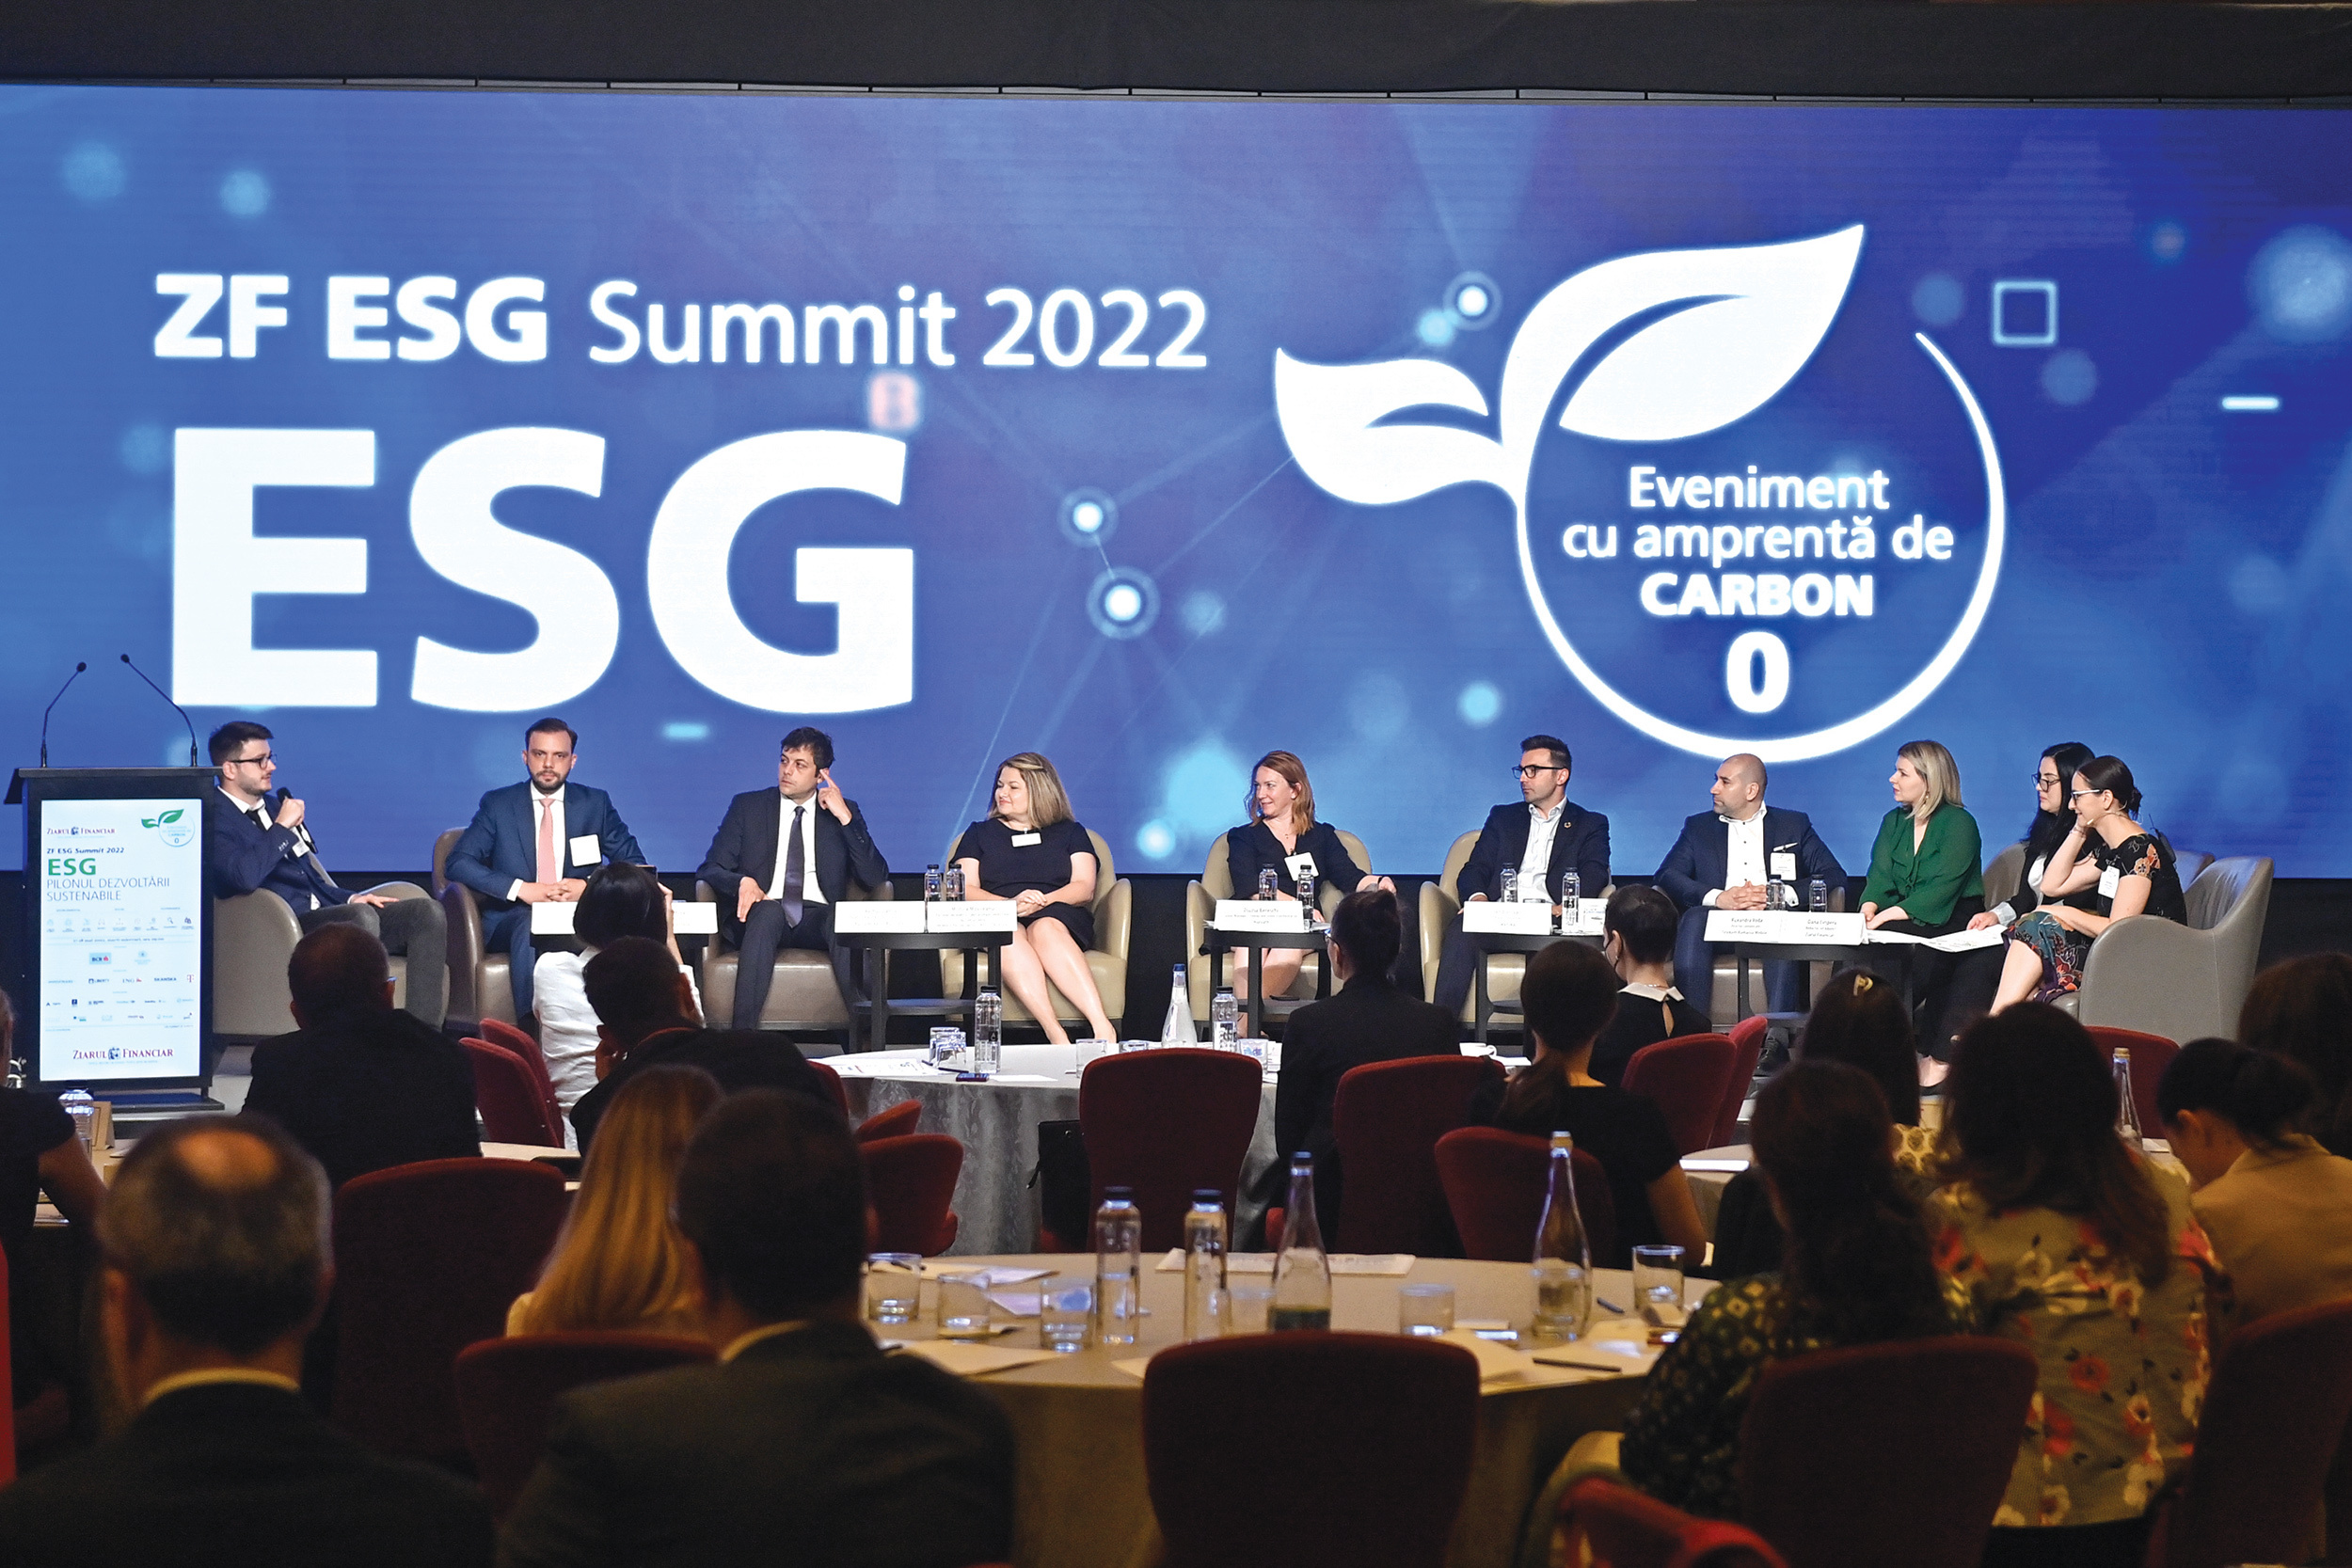 Urmează ZF ESG Summit, a doua ediţie, luni, 8 mai, Bucureşti. Cum dezvoltăm businessuri sustenabile?